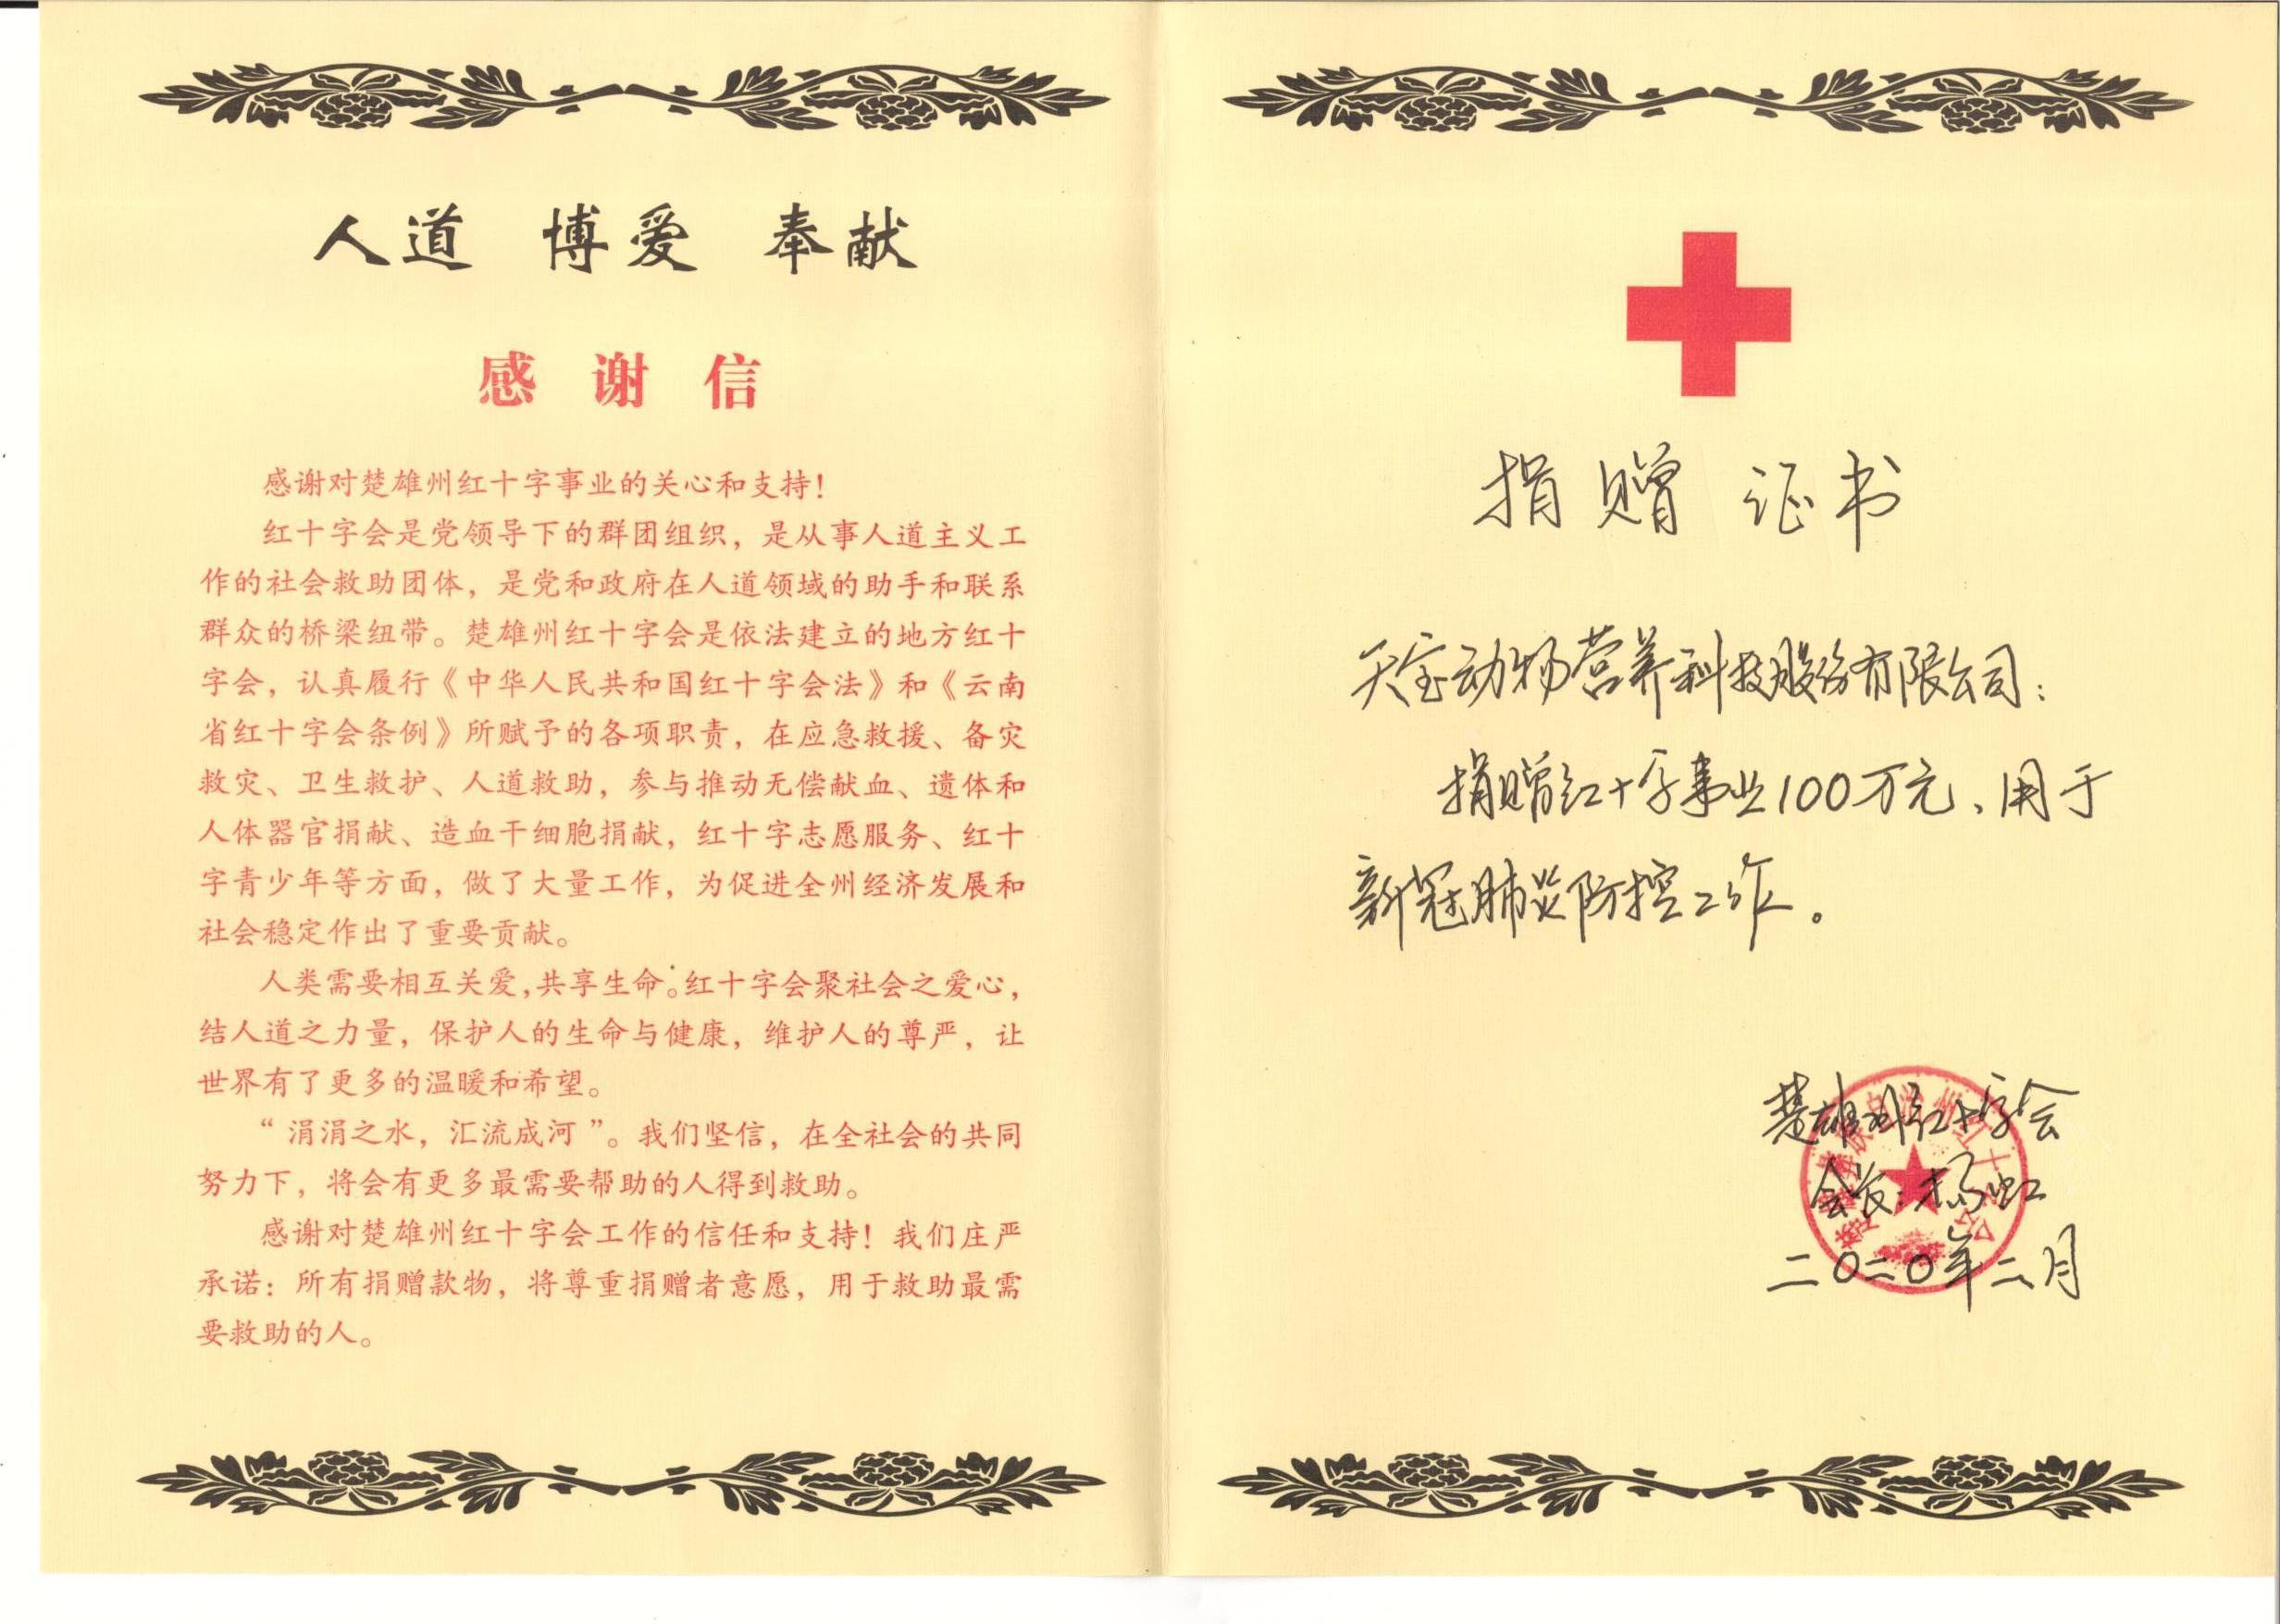 捐赠楚雄州红十字会100万元，用于新冠肺炎防疫工作